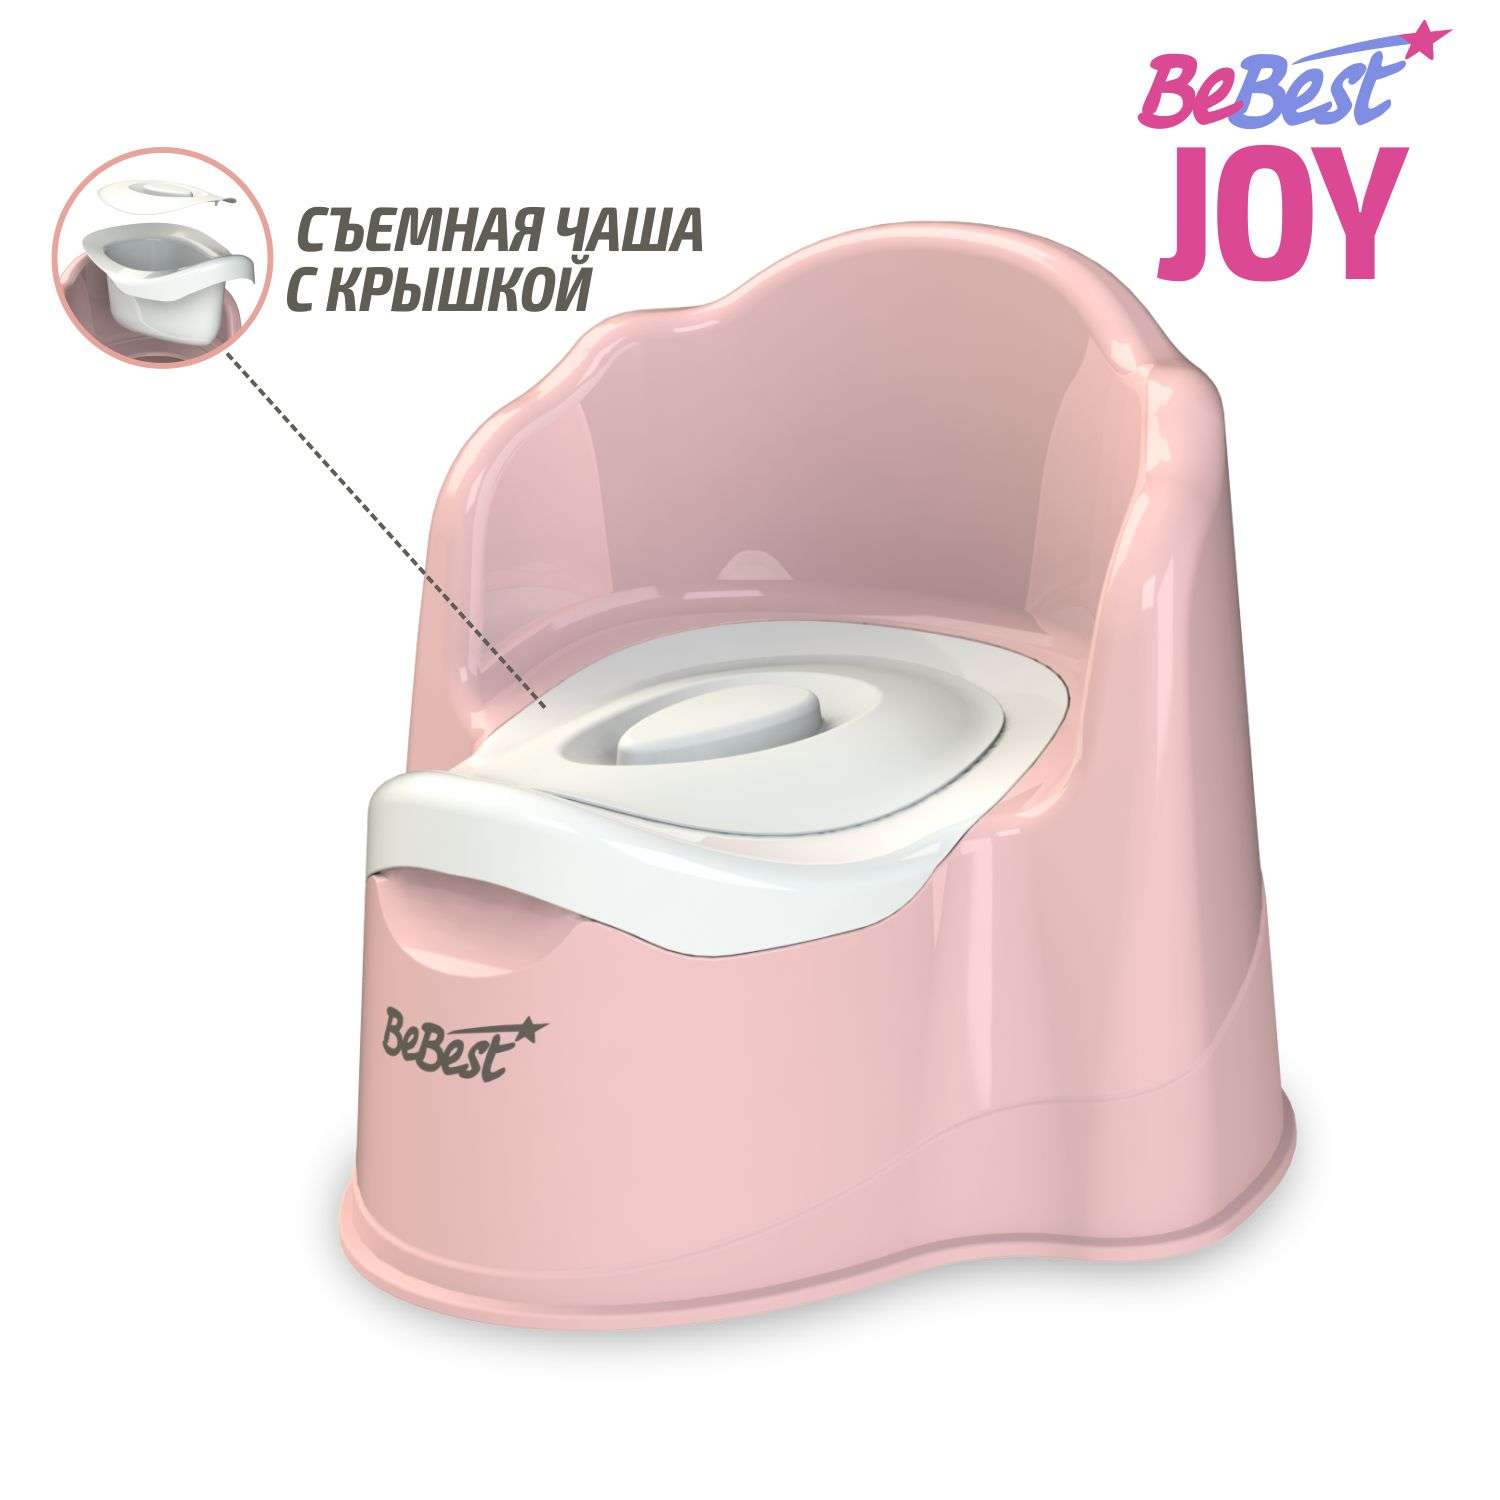 Горшок детский BeBest Joy розовый - фото 1